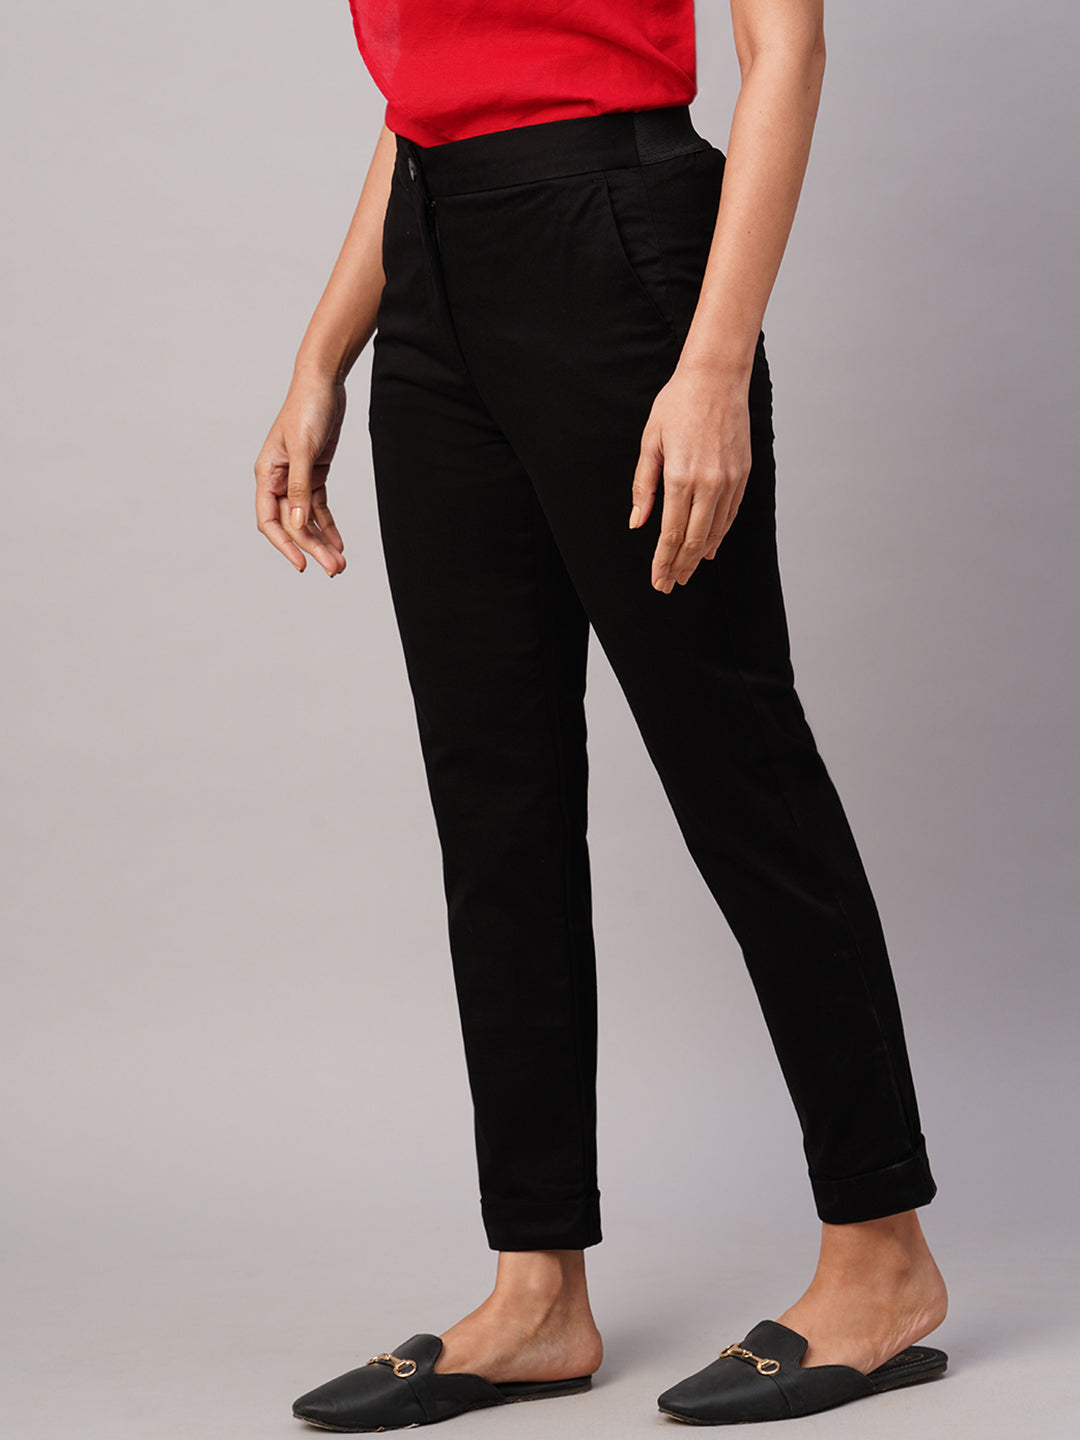 Women's Black Cotton Lycra Slim Fit Pant